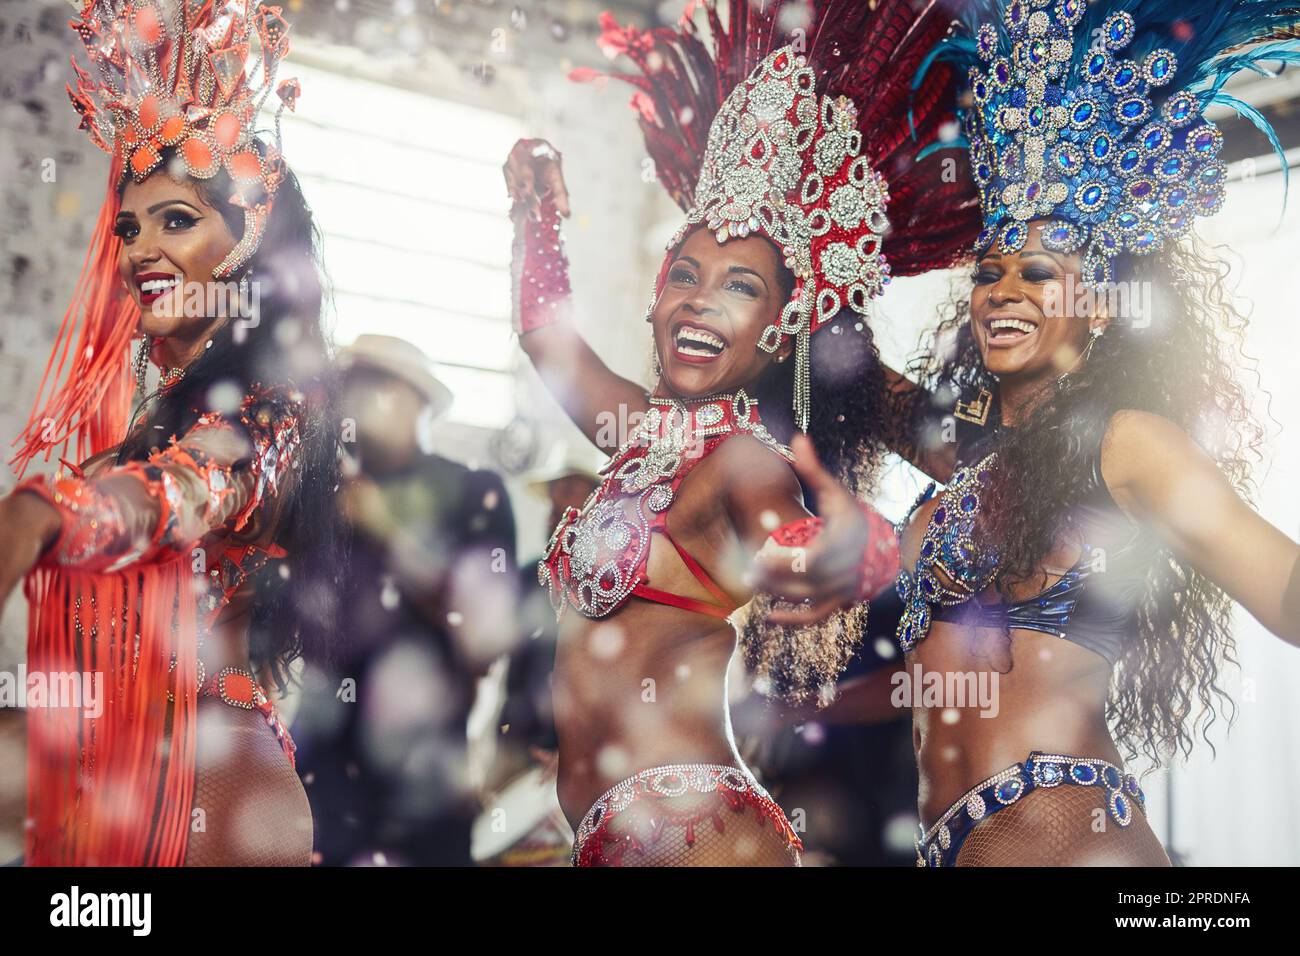 Balancer votre corps aux rythmes de samba. danseuses de samba se présentant dans un carnaval. Banque D'Images